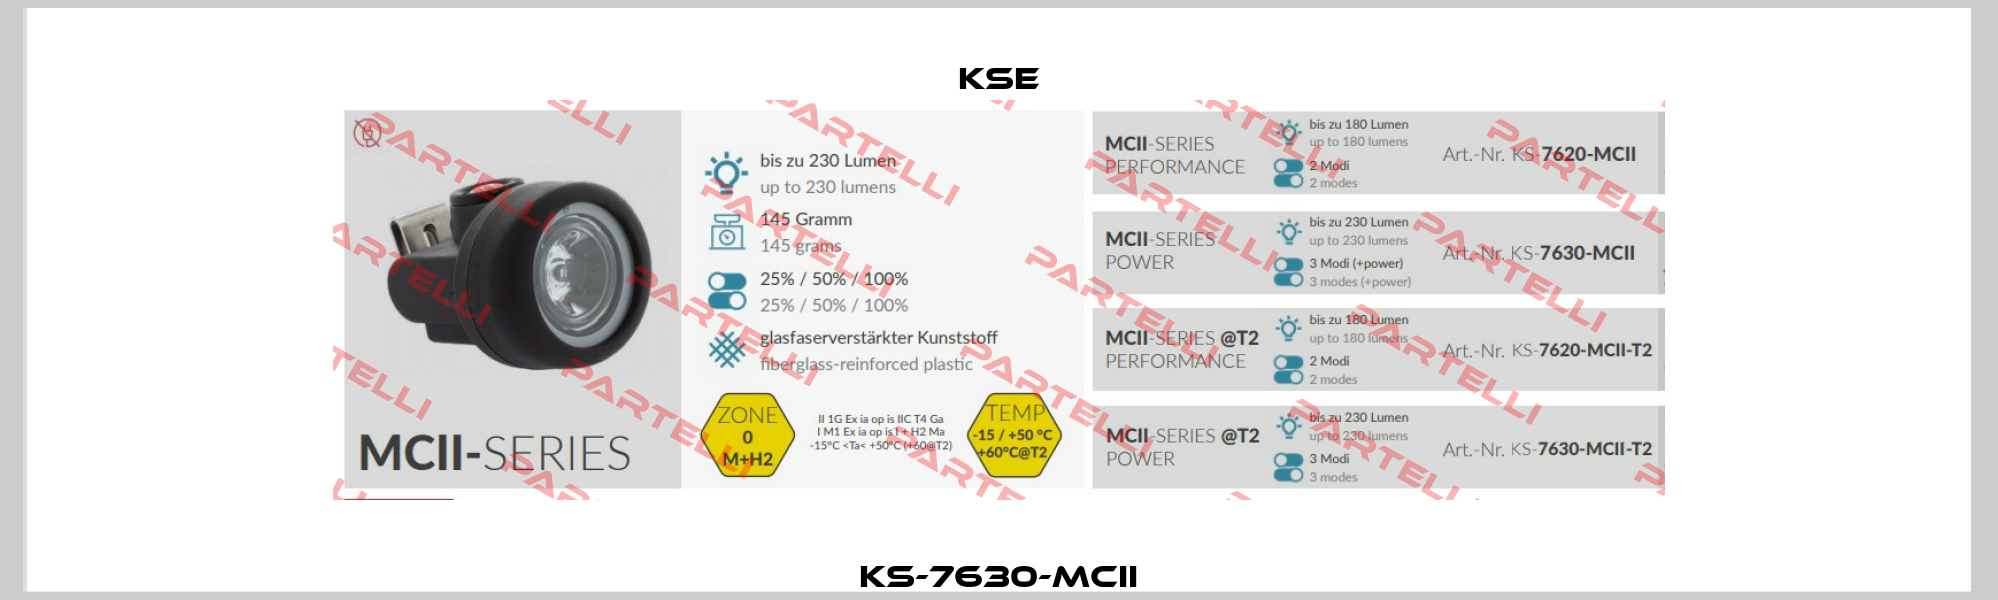 KS-7630-MCII KSE